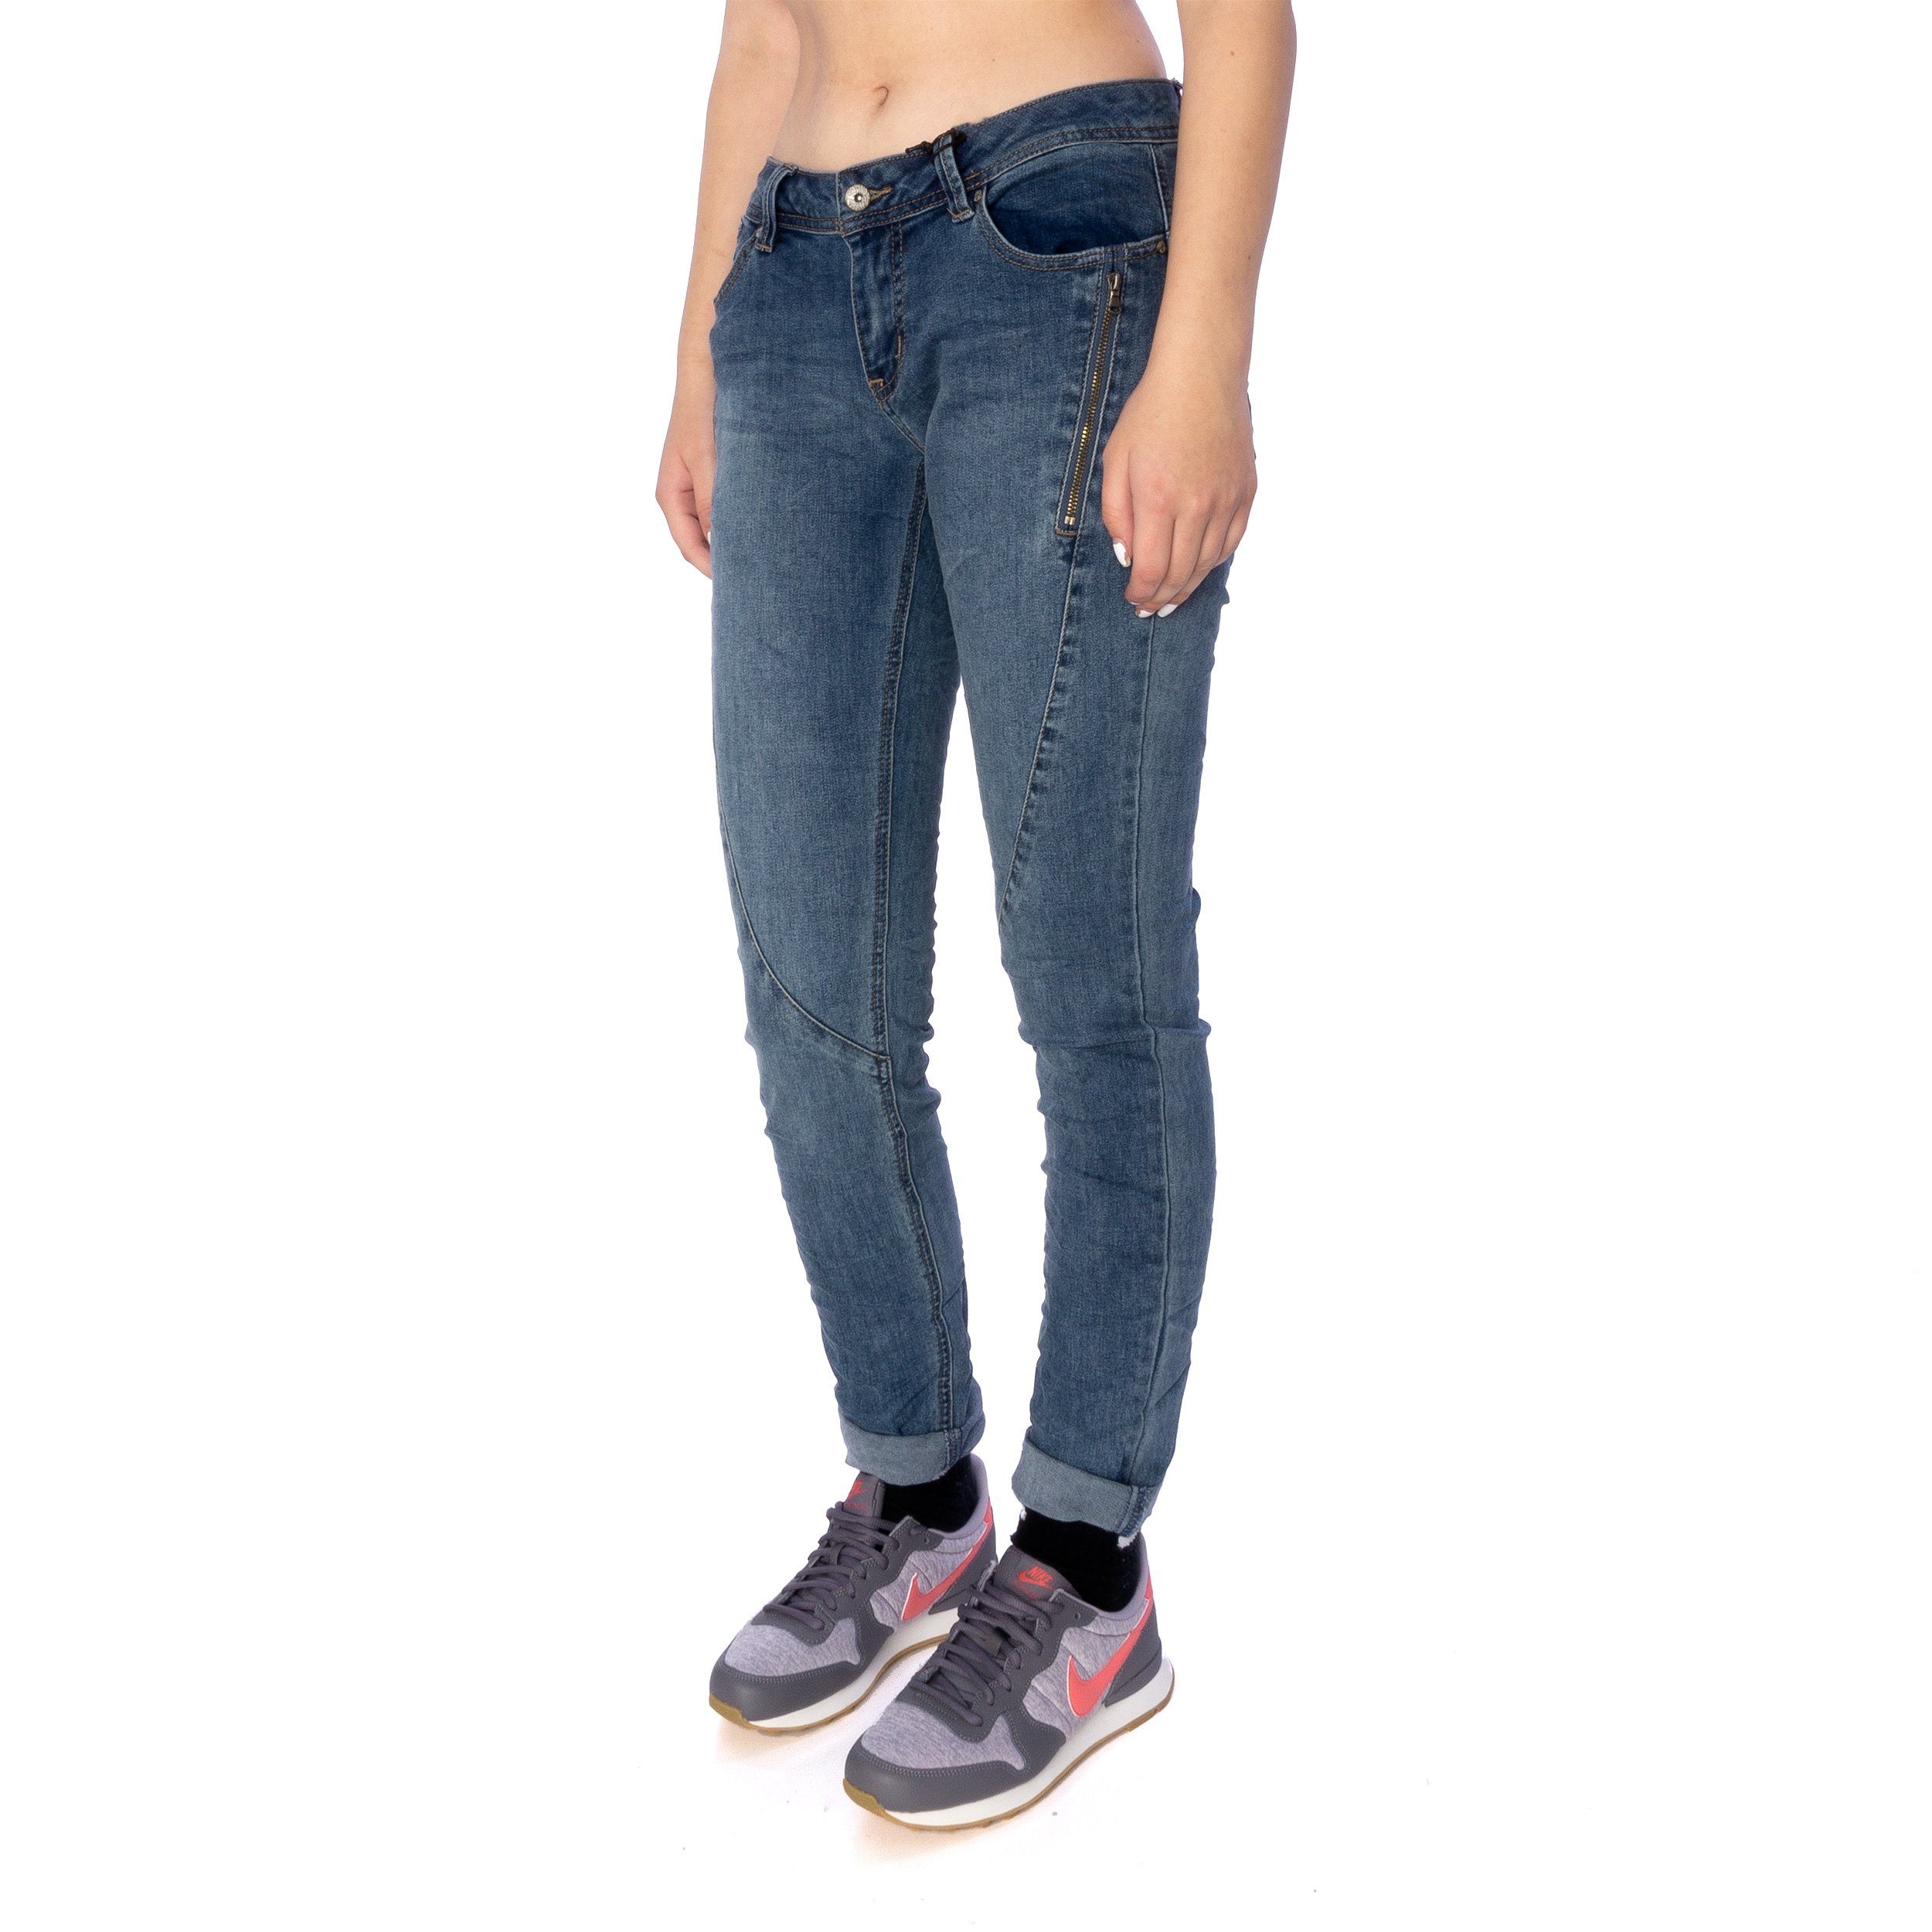 Vista stretch Slim-fit-Jeans K Vista Malibu-Zip Jeans Buena Buena